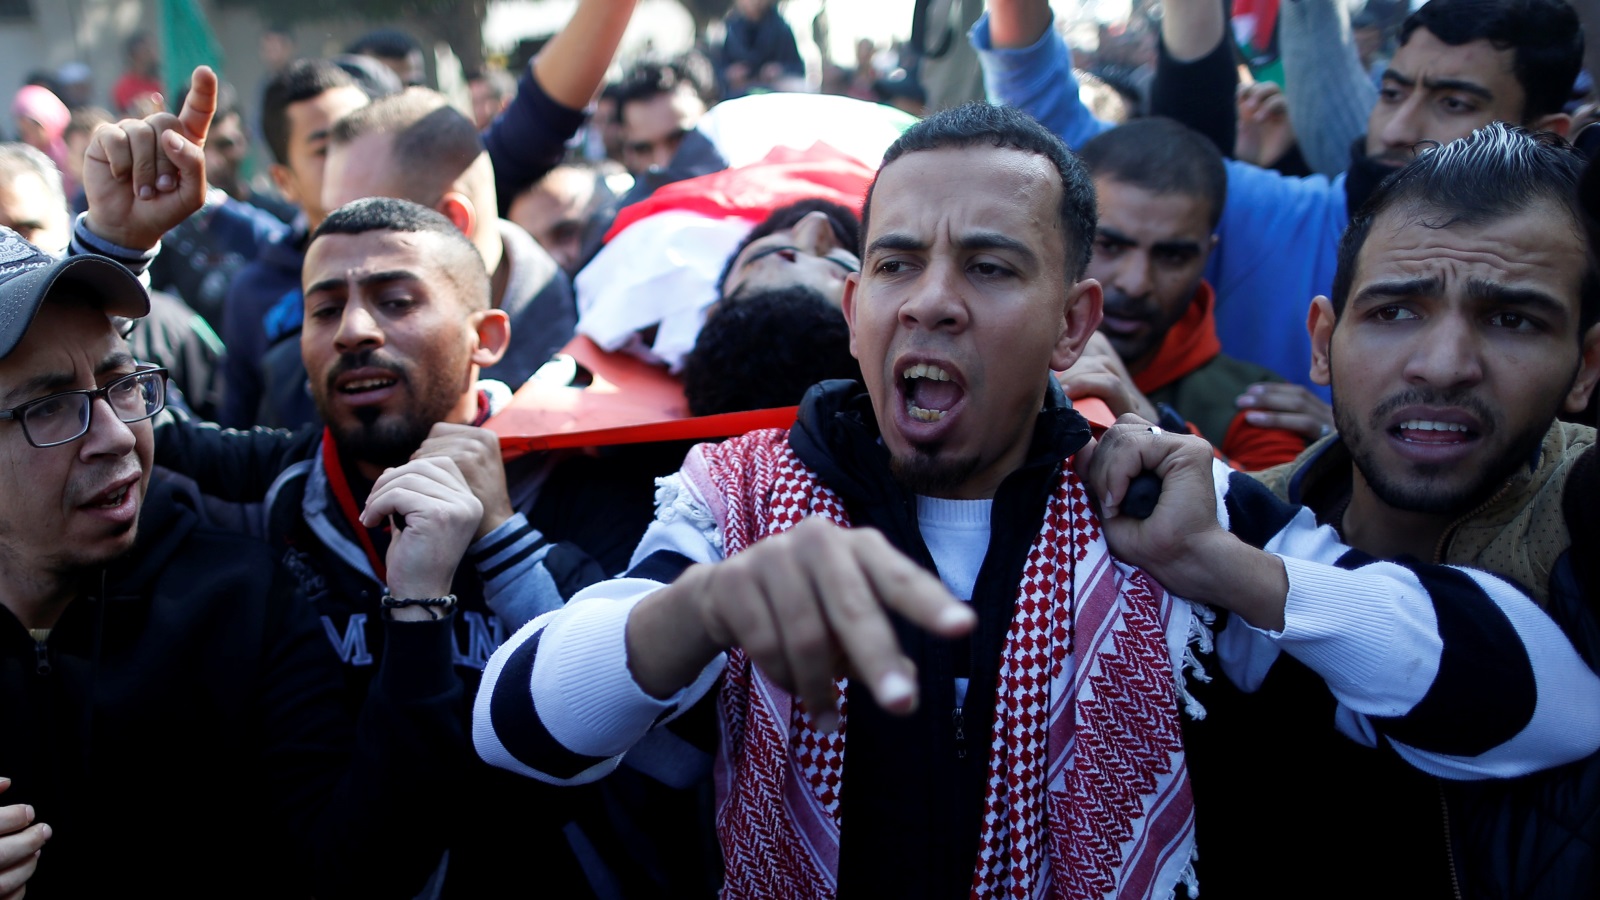 ‪الفلسطينيون قدموا العديد من الشهداء خلال احتجاجاتهم الرافضة لقرار ترمب‬ الفلسطينيون قدموا العديد من الشهداء خلال احتجاجاتهم الرافضة لقرار ترمب (رويترز)